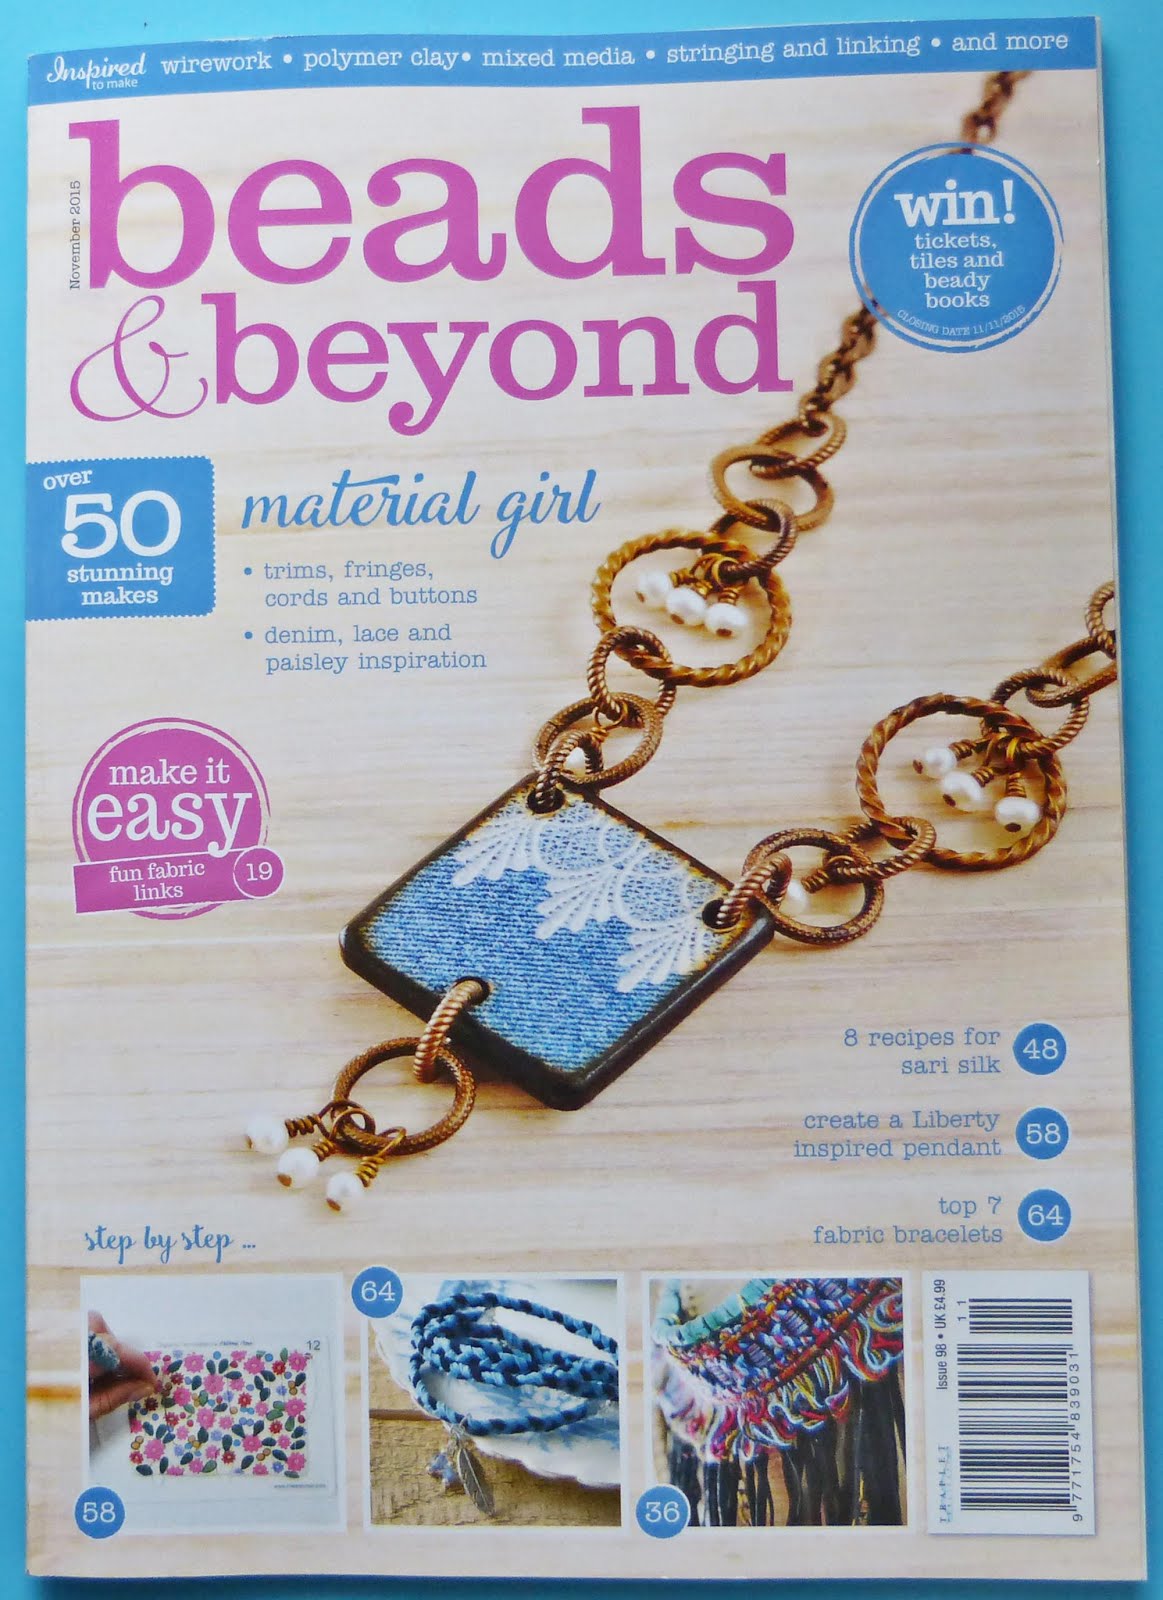 Published Beads & Beyond Magazine